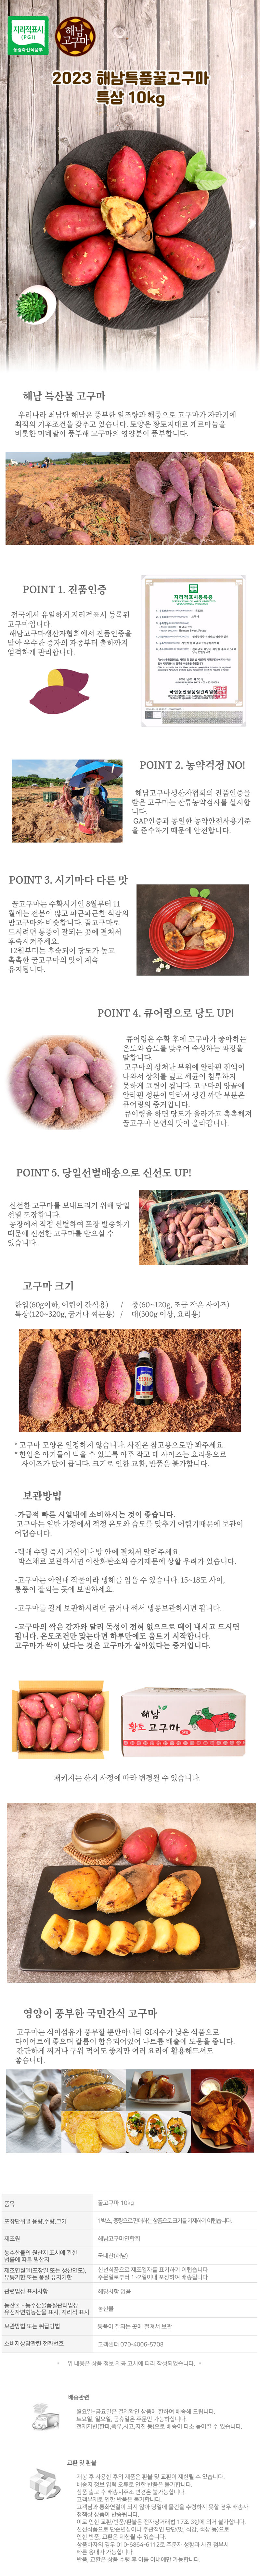 sweetpotato-11.jpg